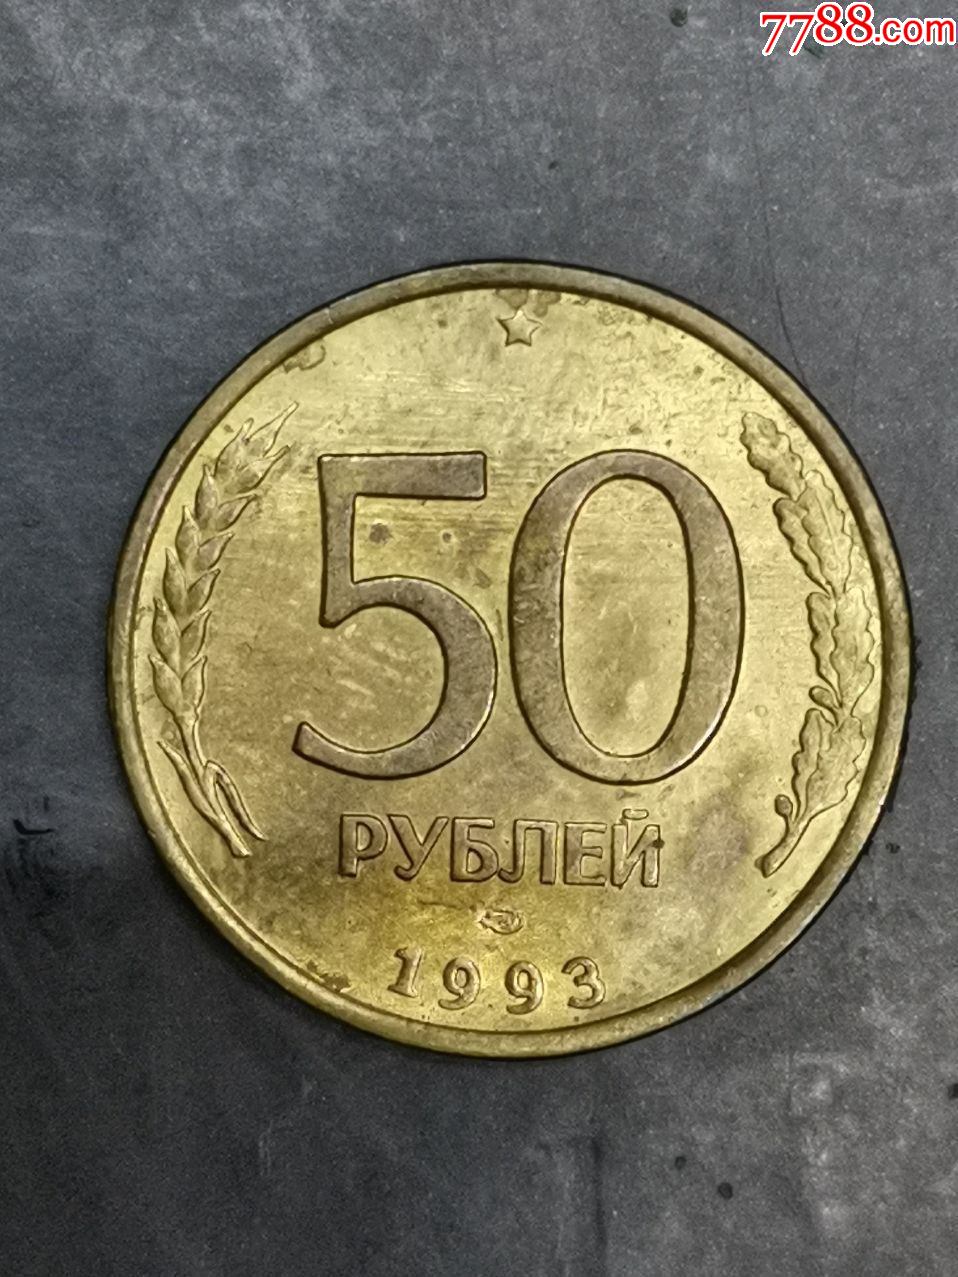 俄罗斯1993年50卢布